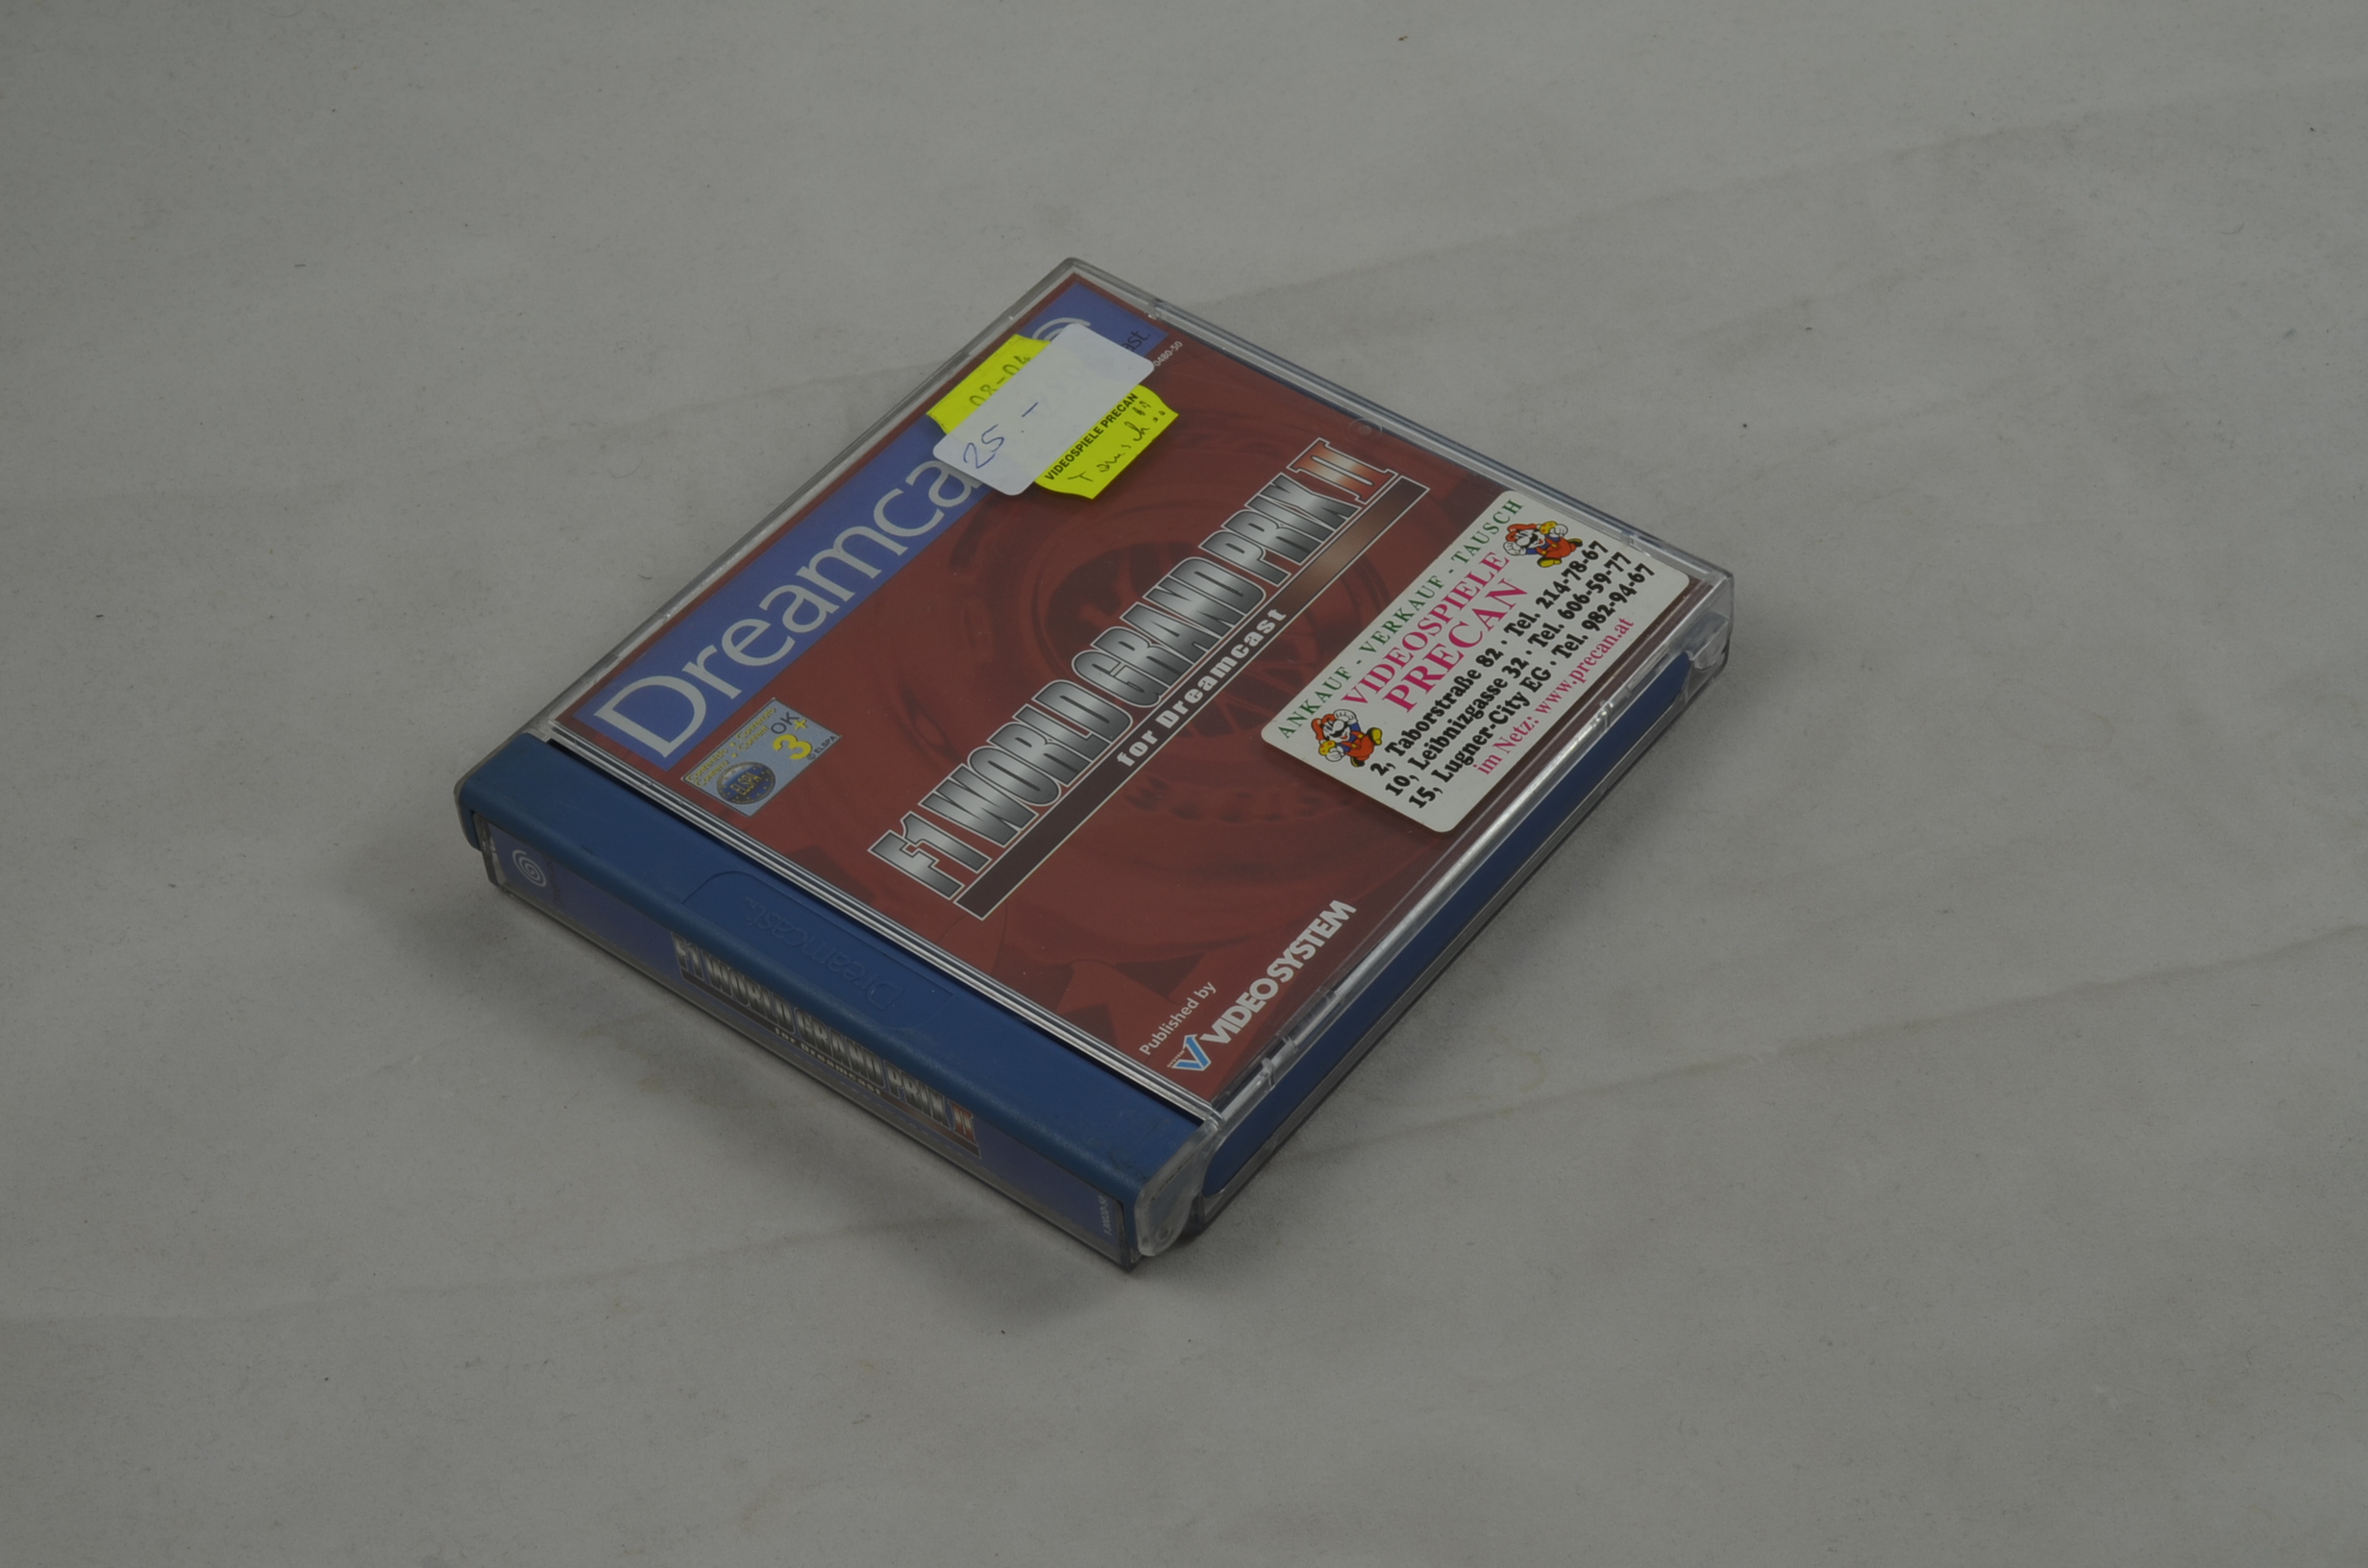 Produktbild von F1 World Grand Prix II Dreamcast Spiel CIB (neu)